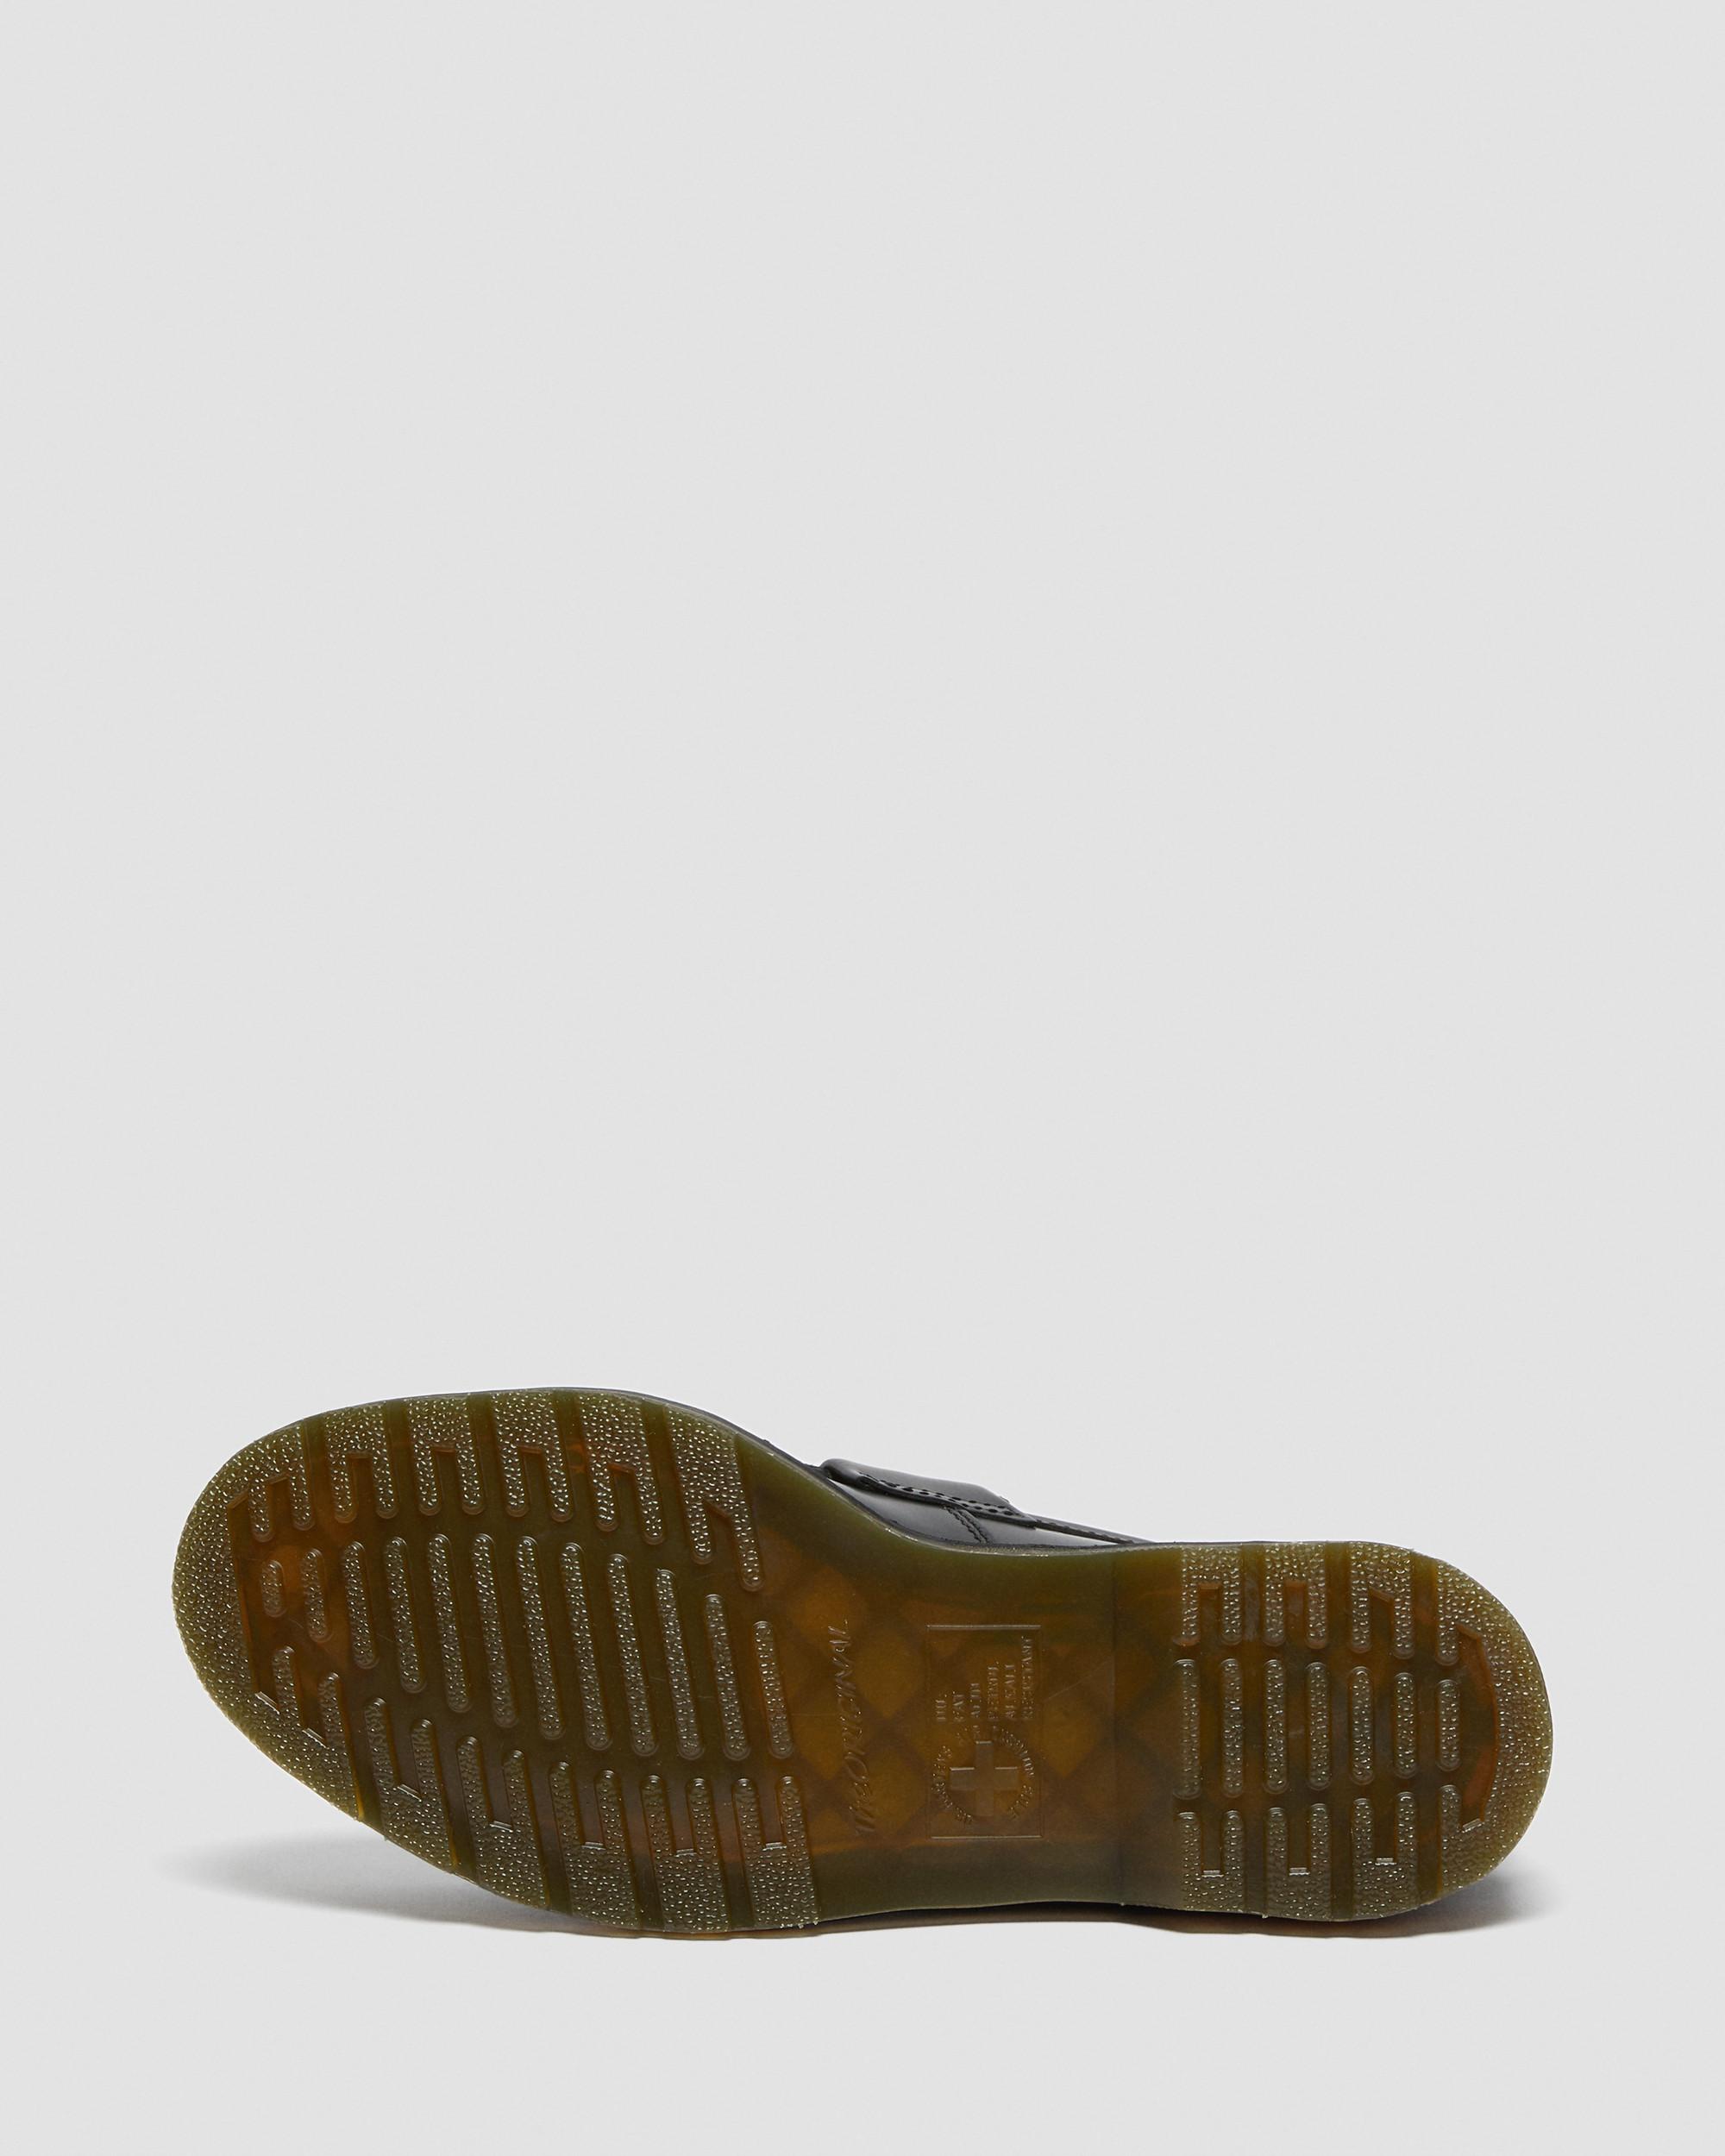 Adrian Yellow Stitch 黃色縫線光面皮鞋